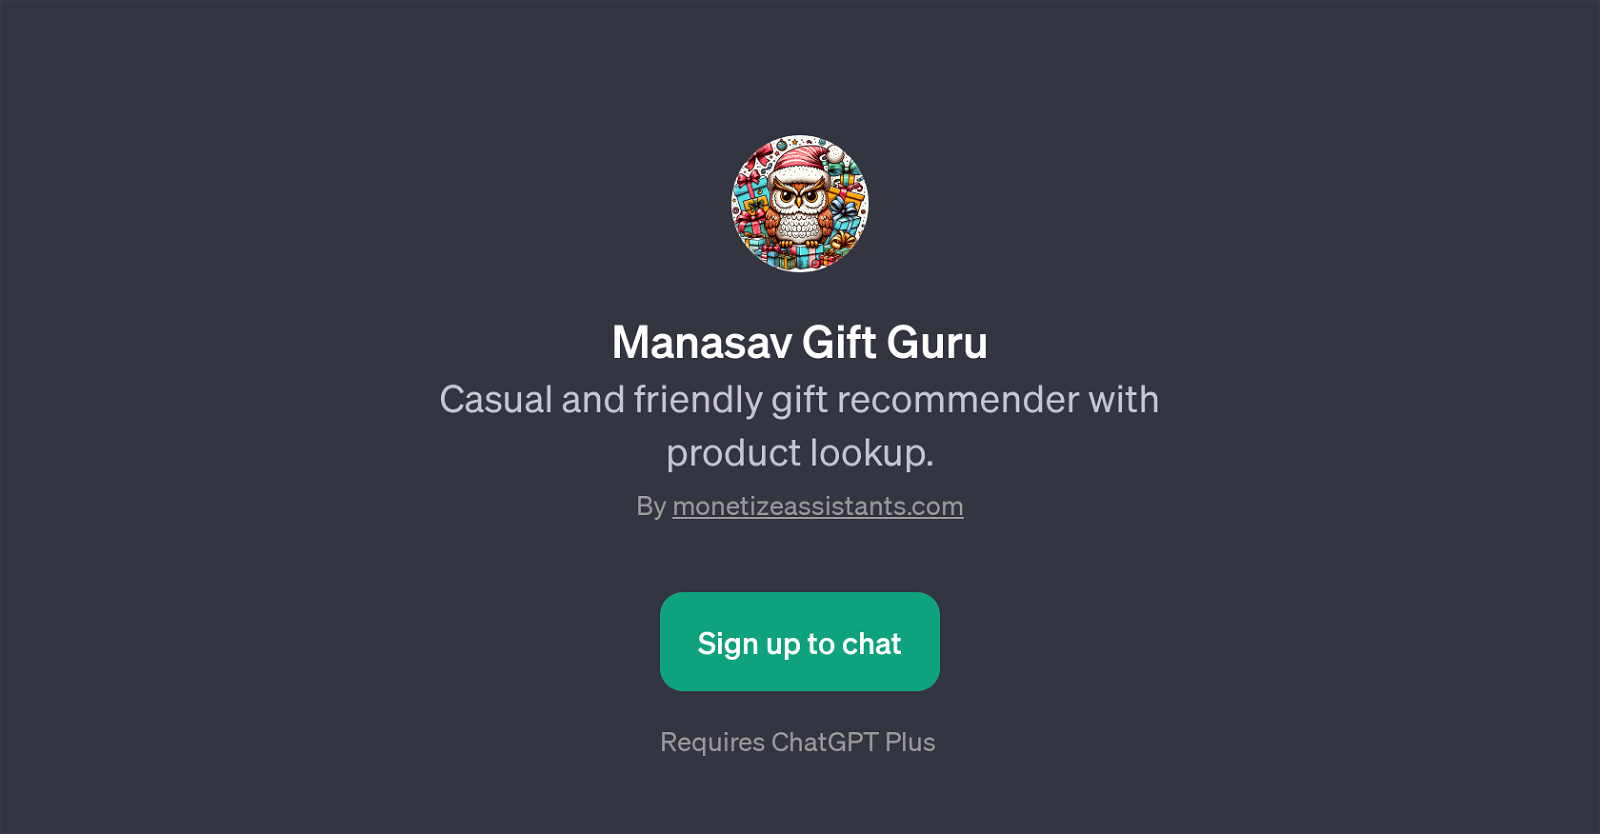 Manasav Gift Guru website